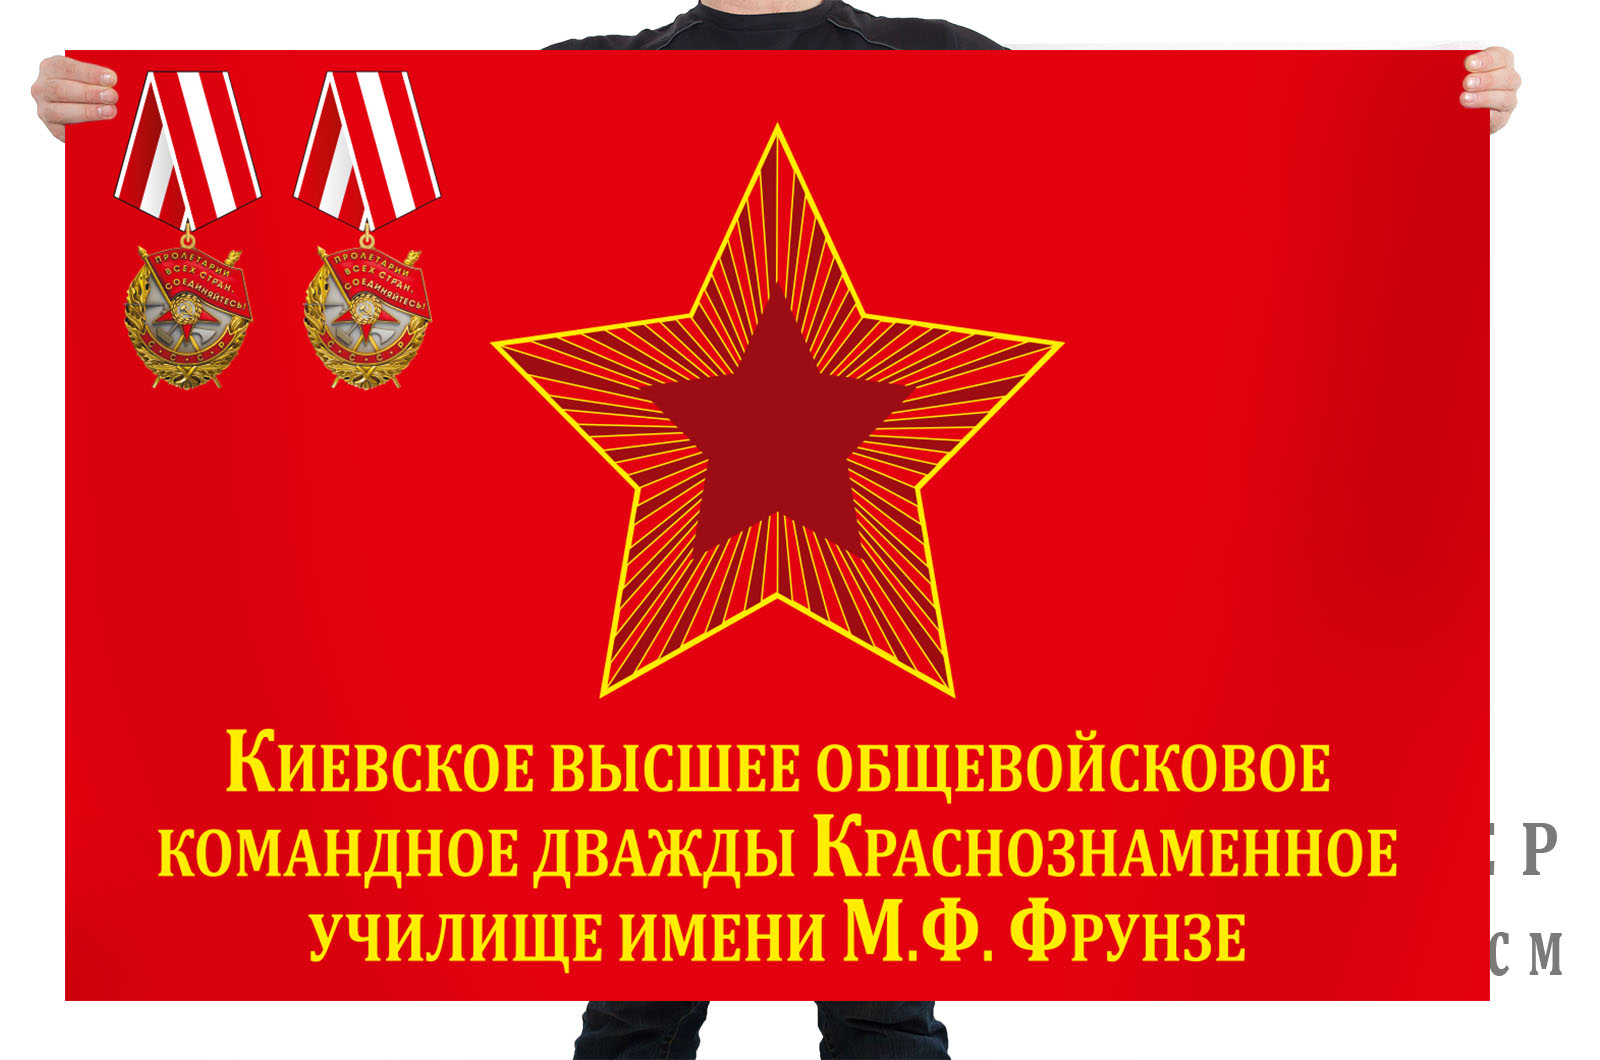 Флаг Киевское высшее общевойсковое командное дважды Краснознамённое училище имени М. В. Фрунзе